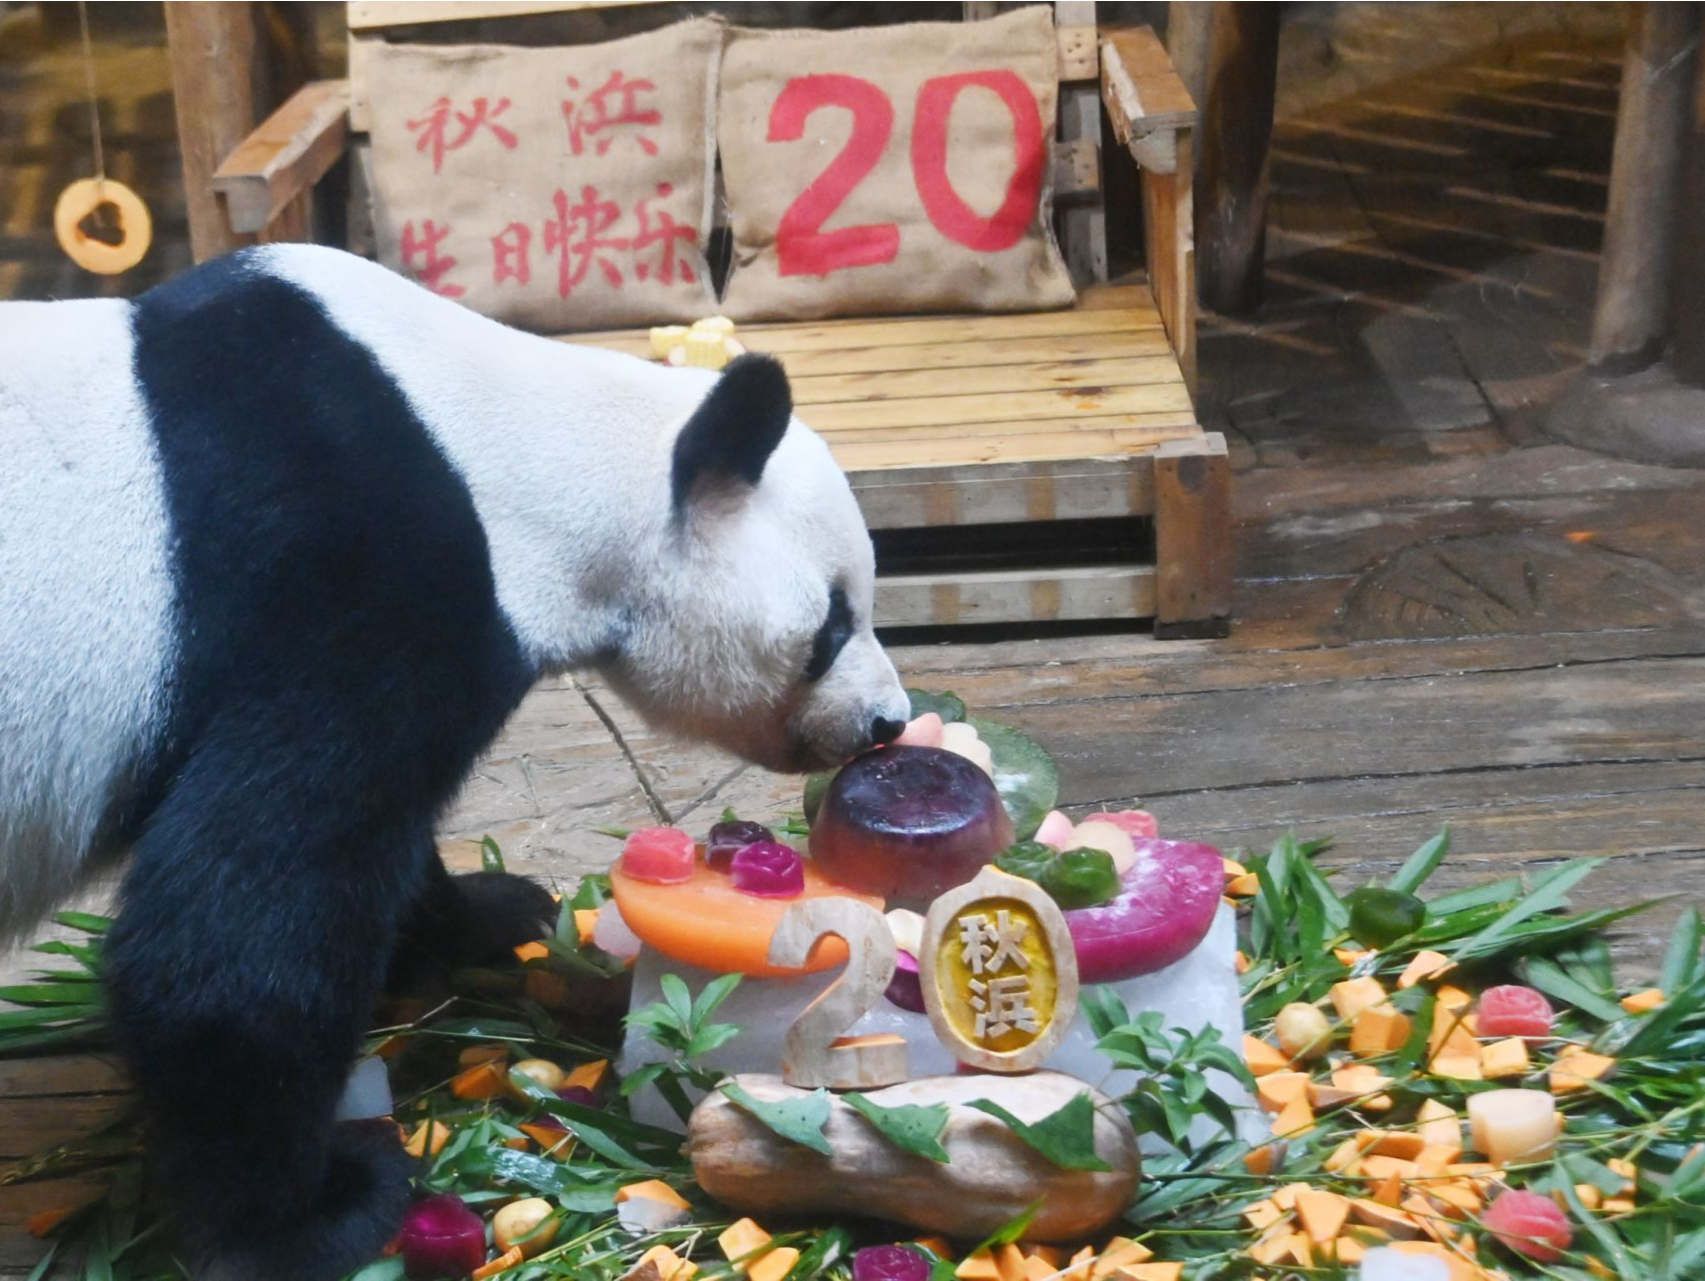 深圳野生动物园为大熊猫“秋浜”庆生